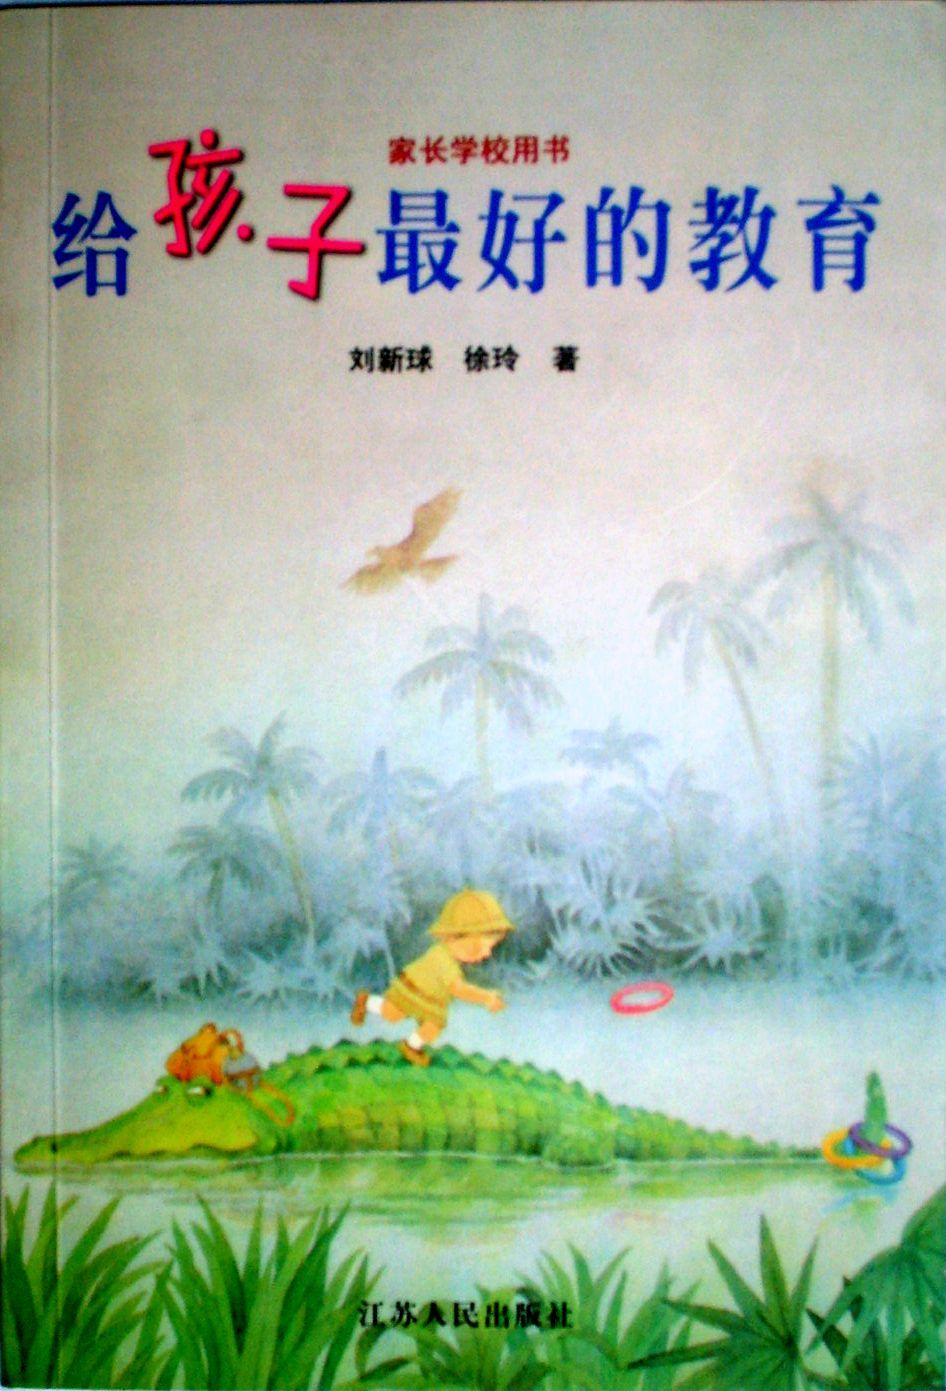 徐玲教育專著《給孩子最好的教育》